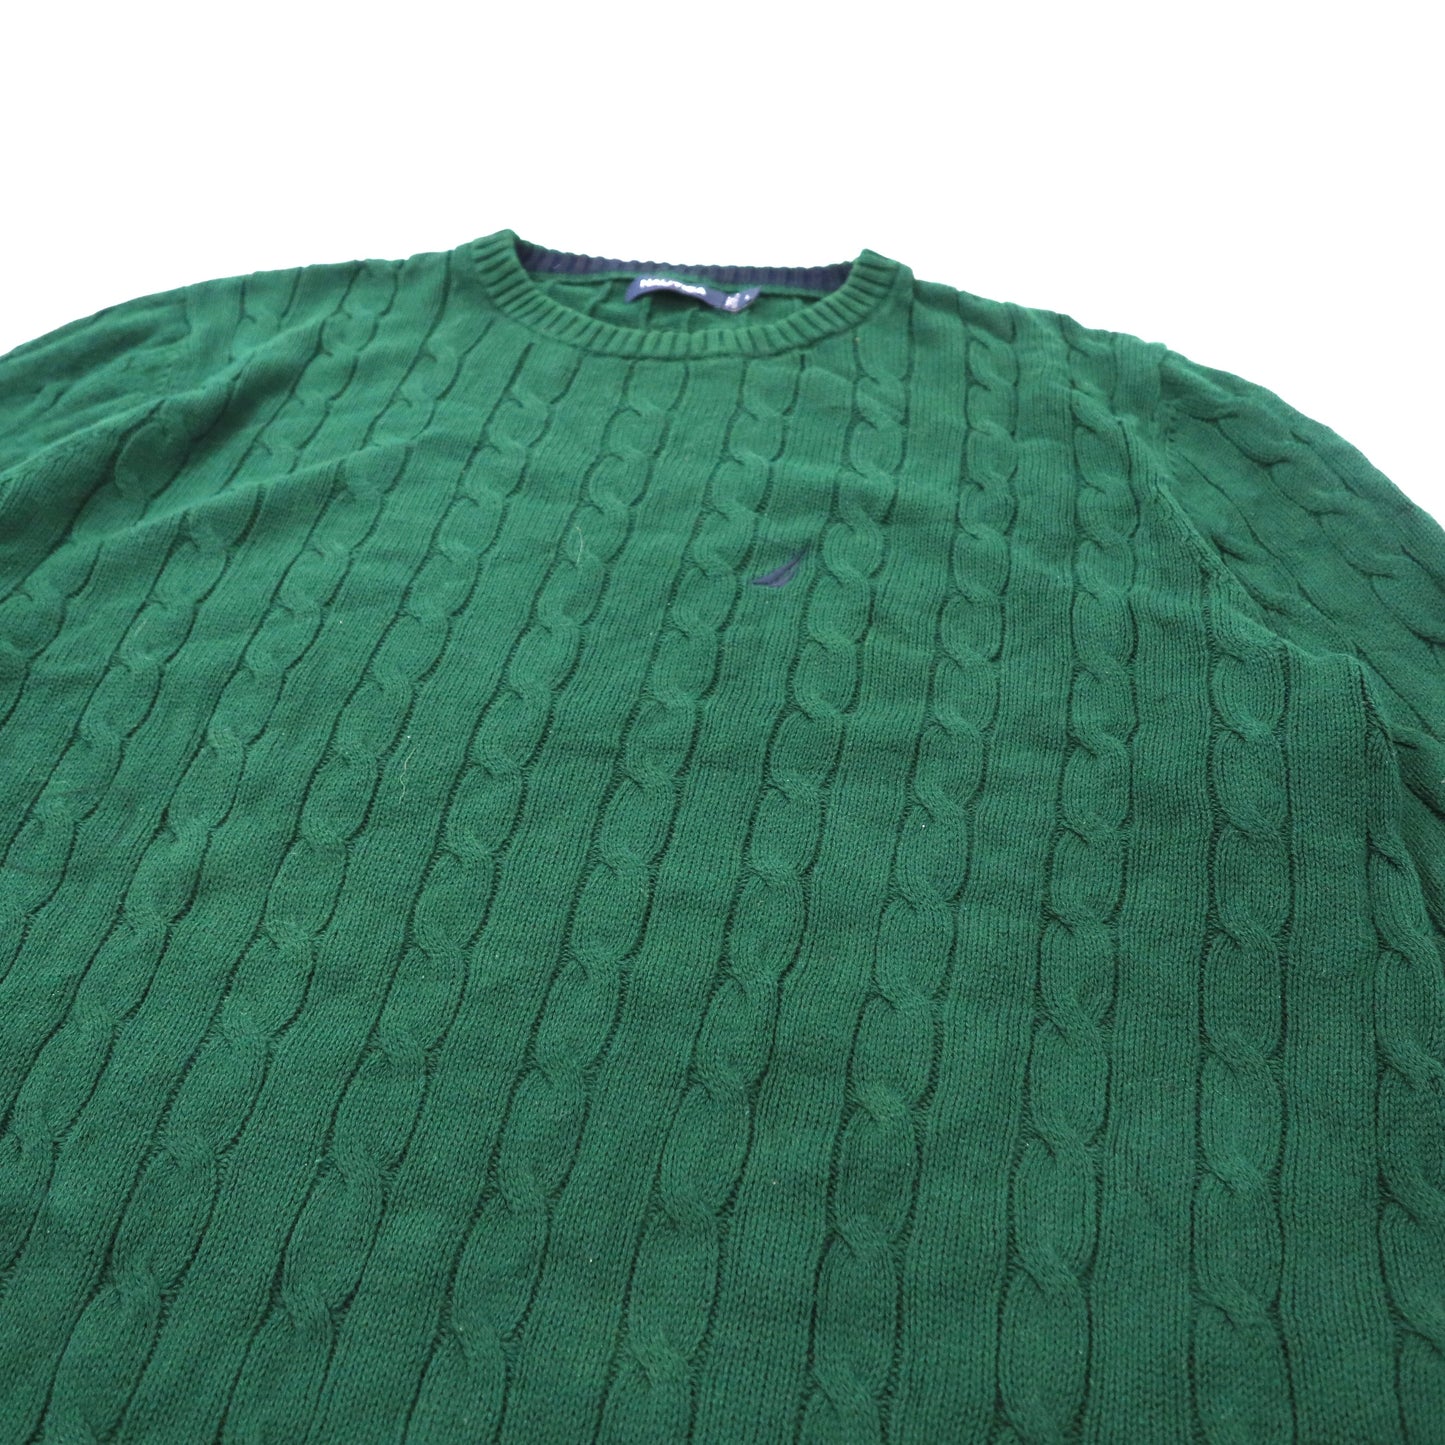 NAUTICA ビッグサイズ ローゲージニット セーター L グリーン コットン ワンポイントロゴ刺繍